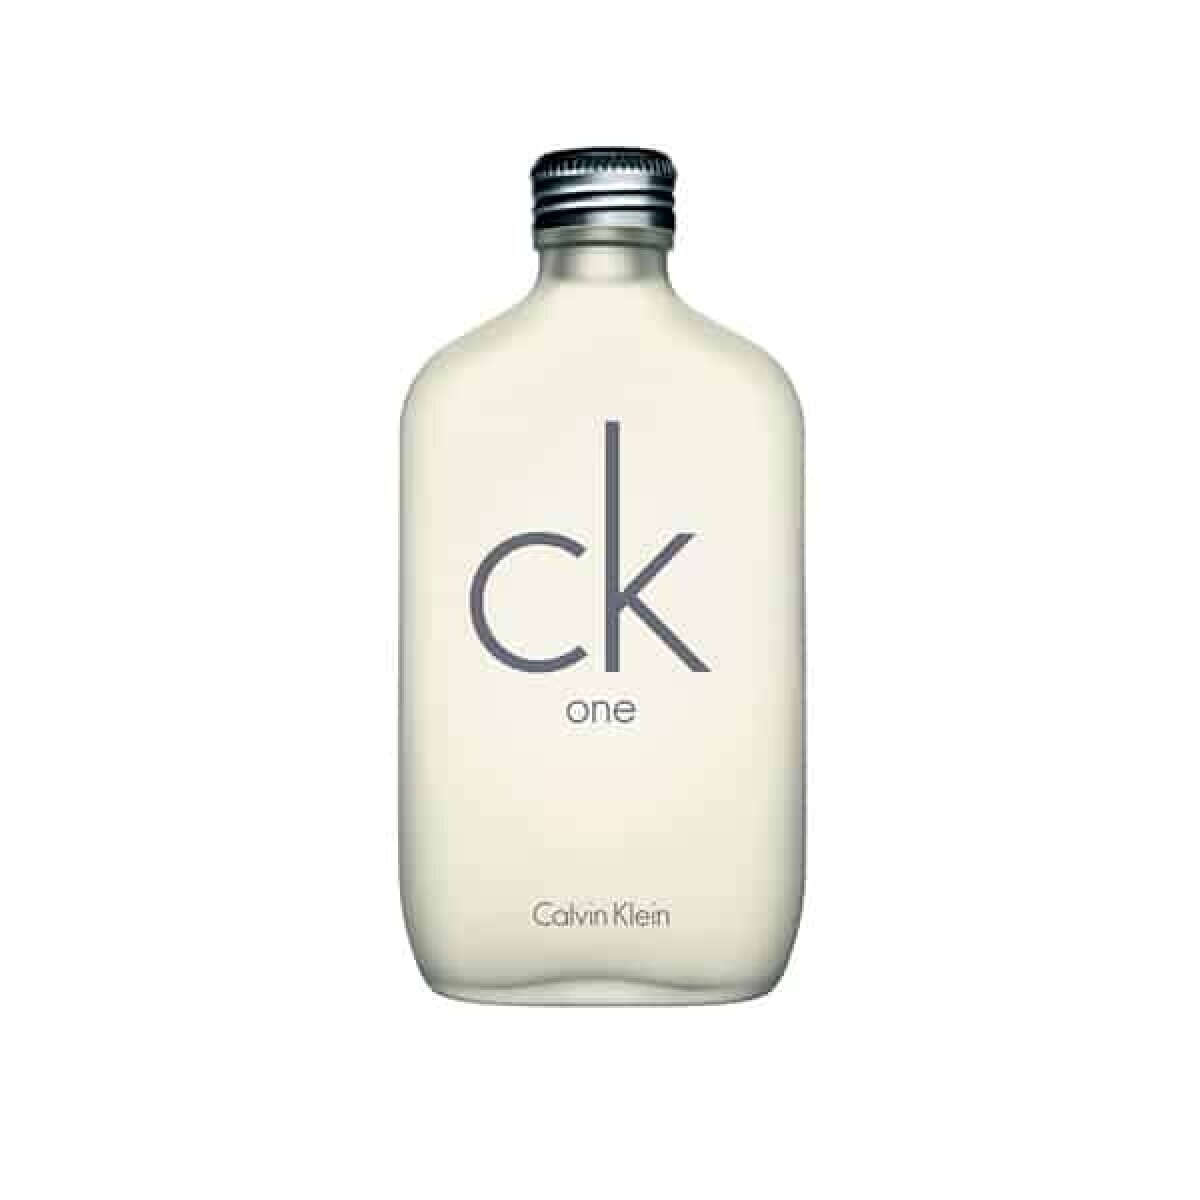 Calvin Klein CK ONE EDT 200 ml 